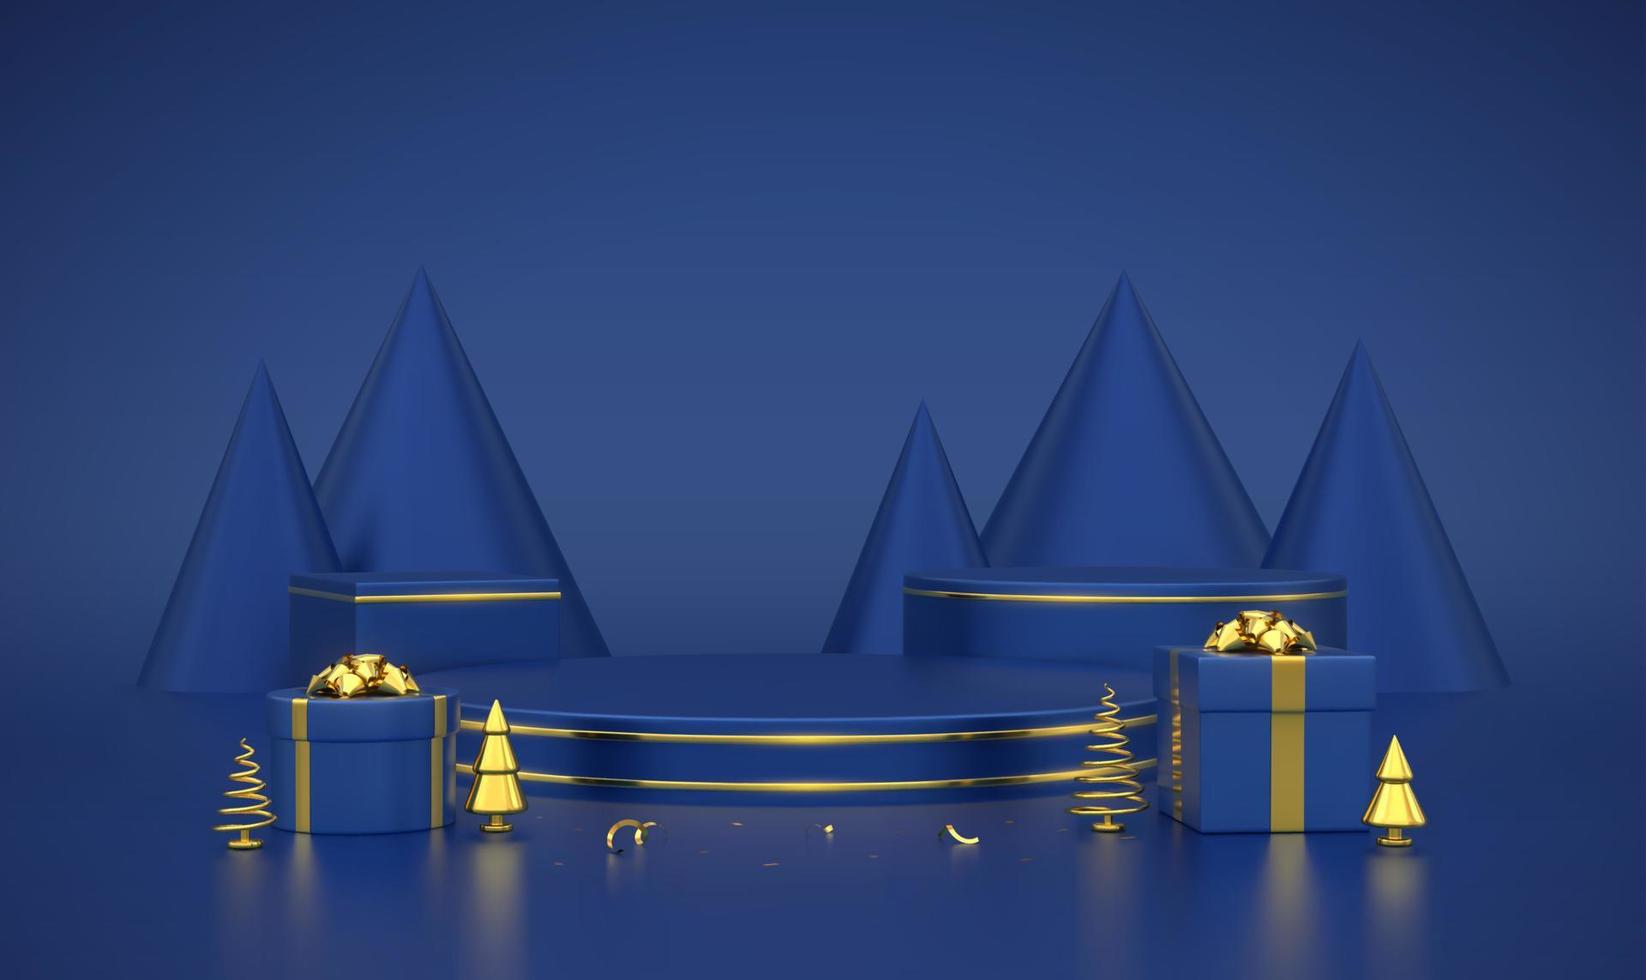 blauw rond en kubuspodium. scène en 3D-platform met gouden cirkel op blauwe achtergrond. leeg voetstuk met geschenkdozen met gouden strik en gouden metalen dennen, kegelsparren. vectorillustratie. vector